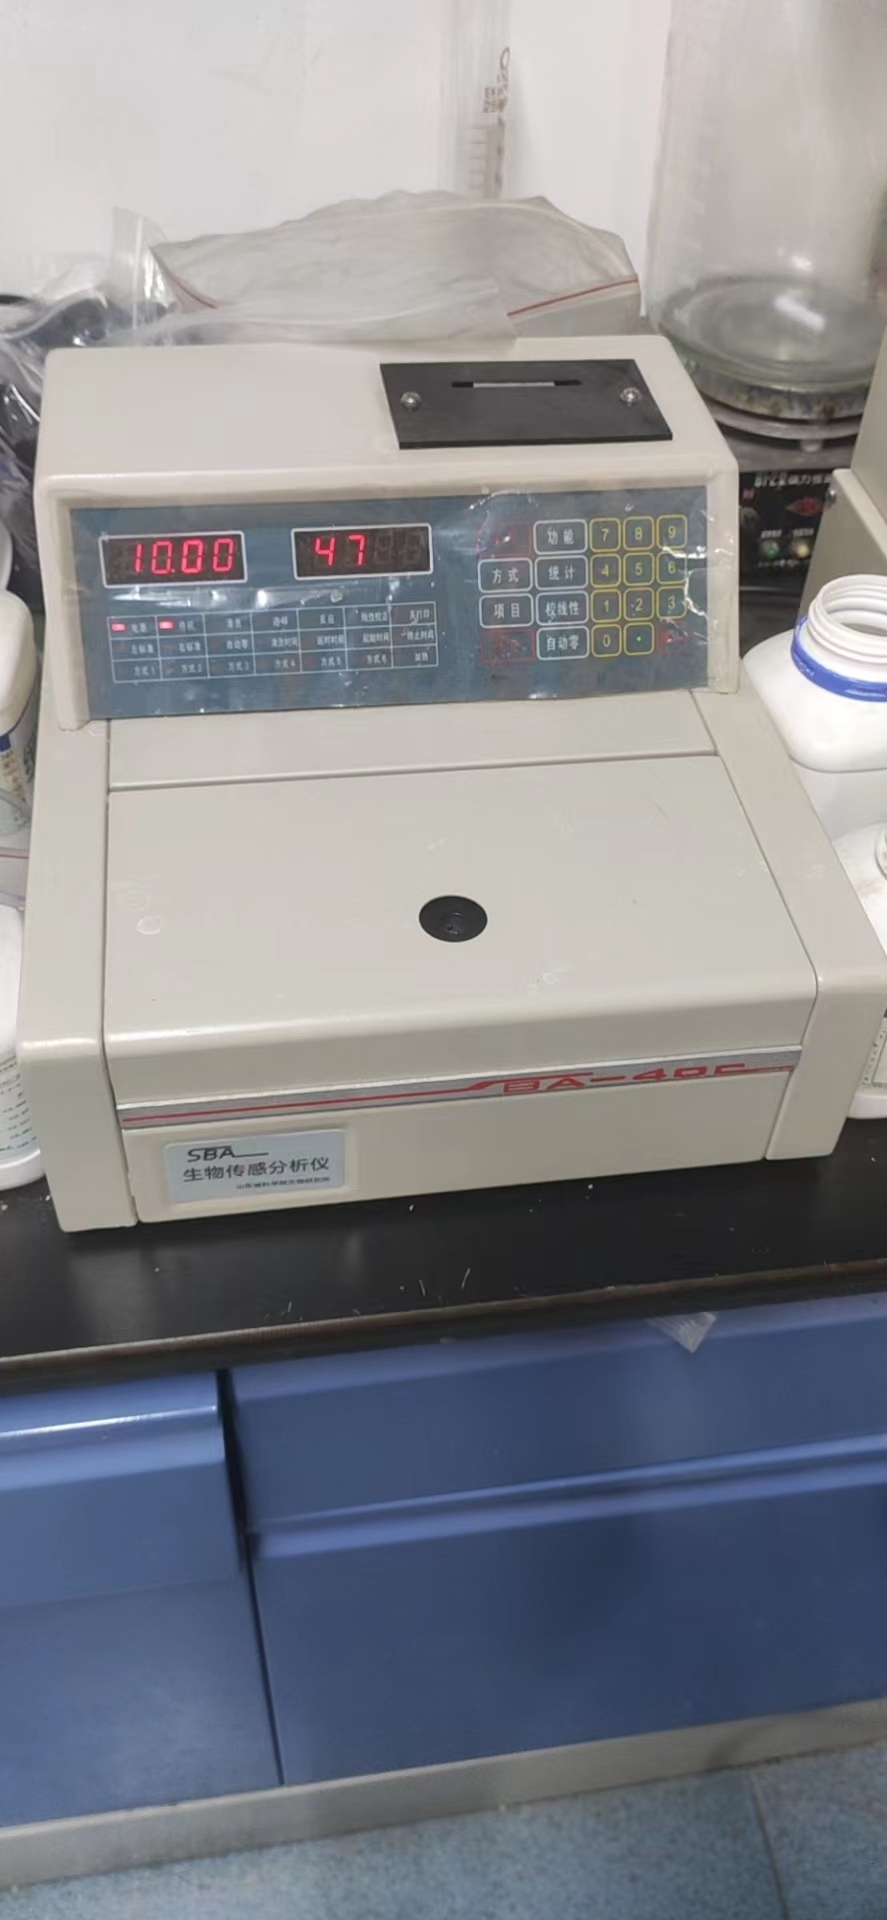 SBA-40C生物传感分析仪